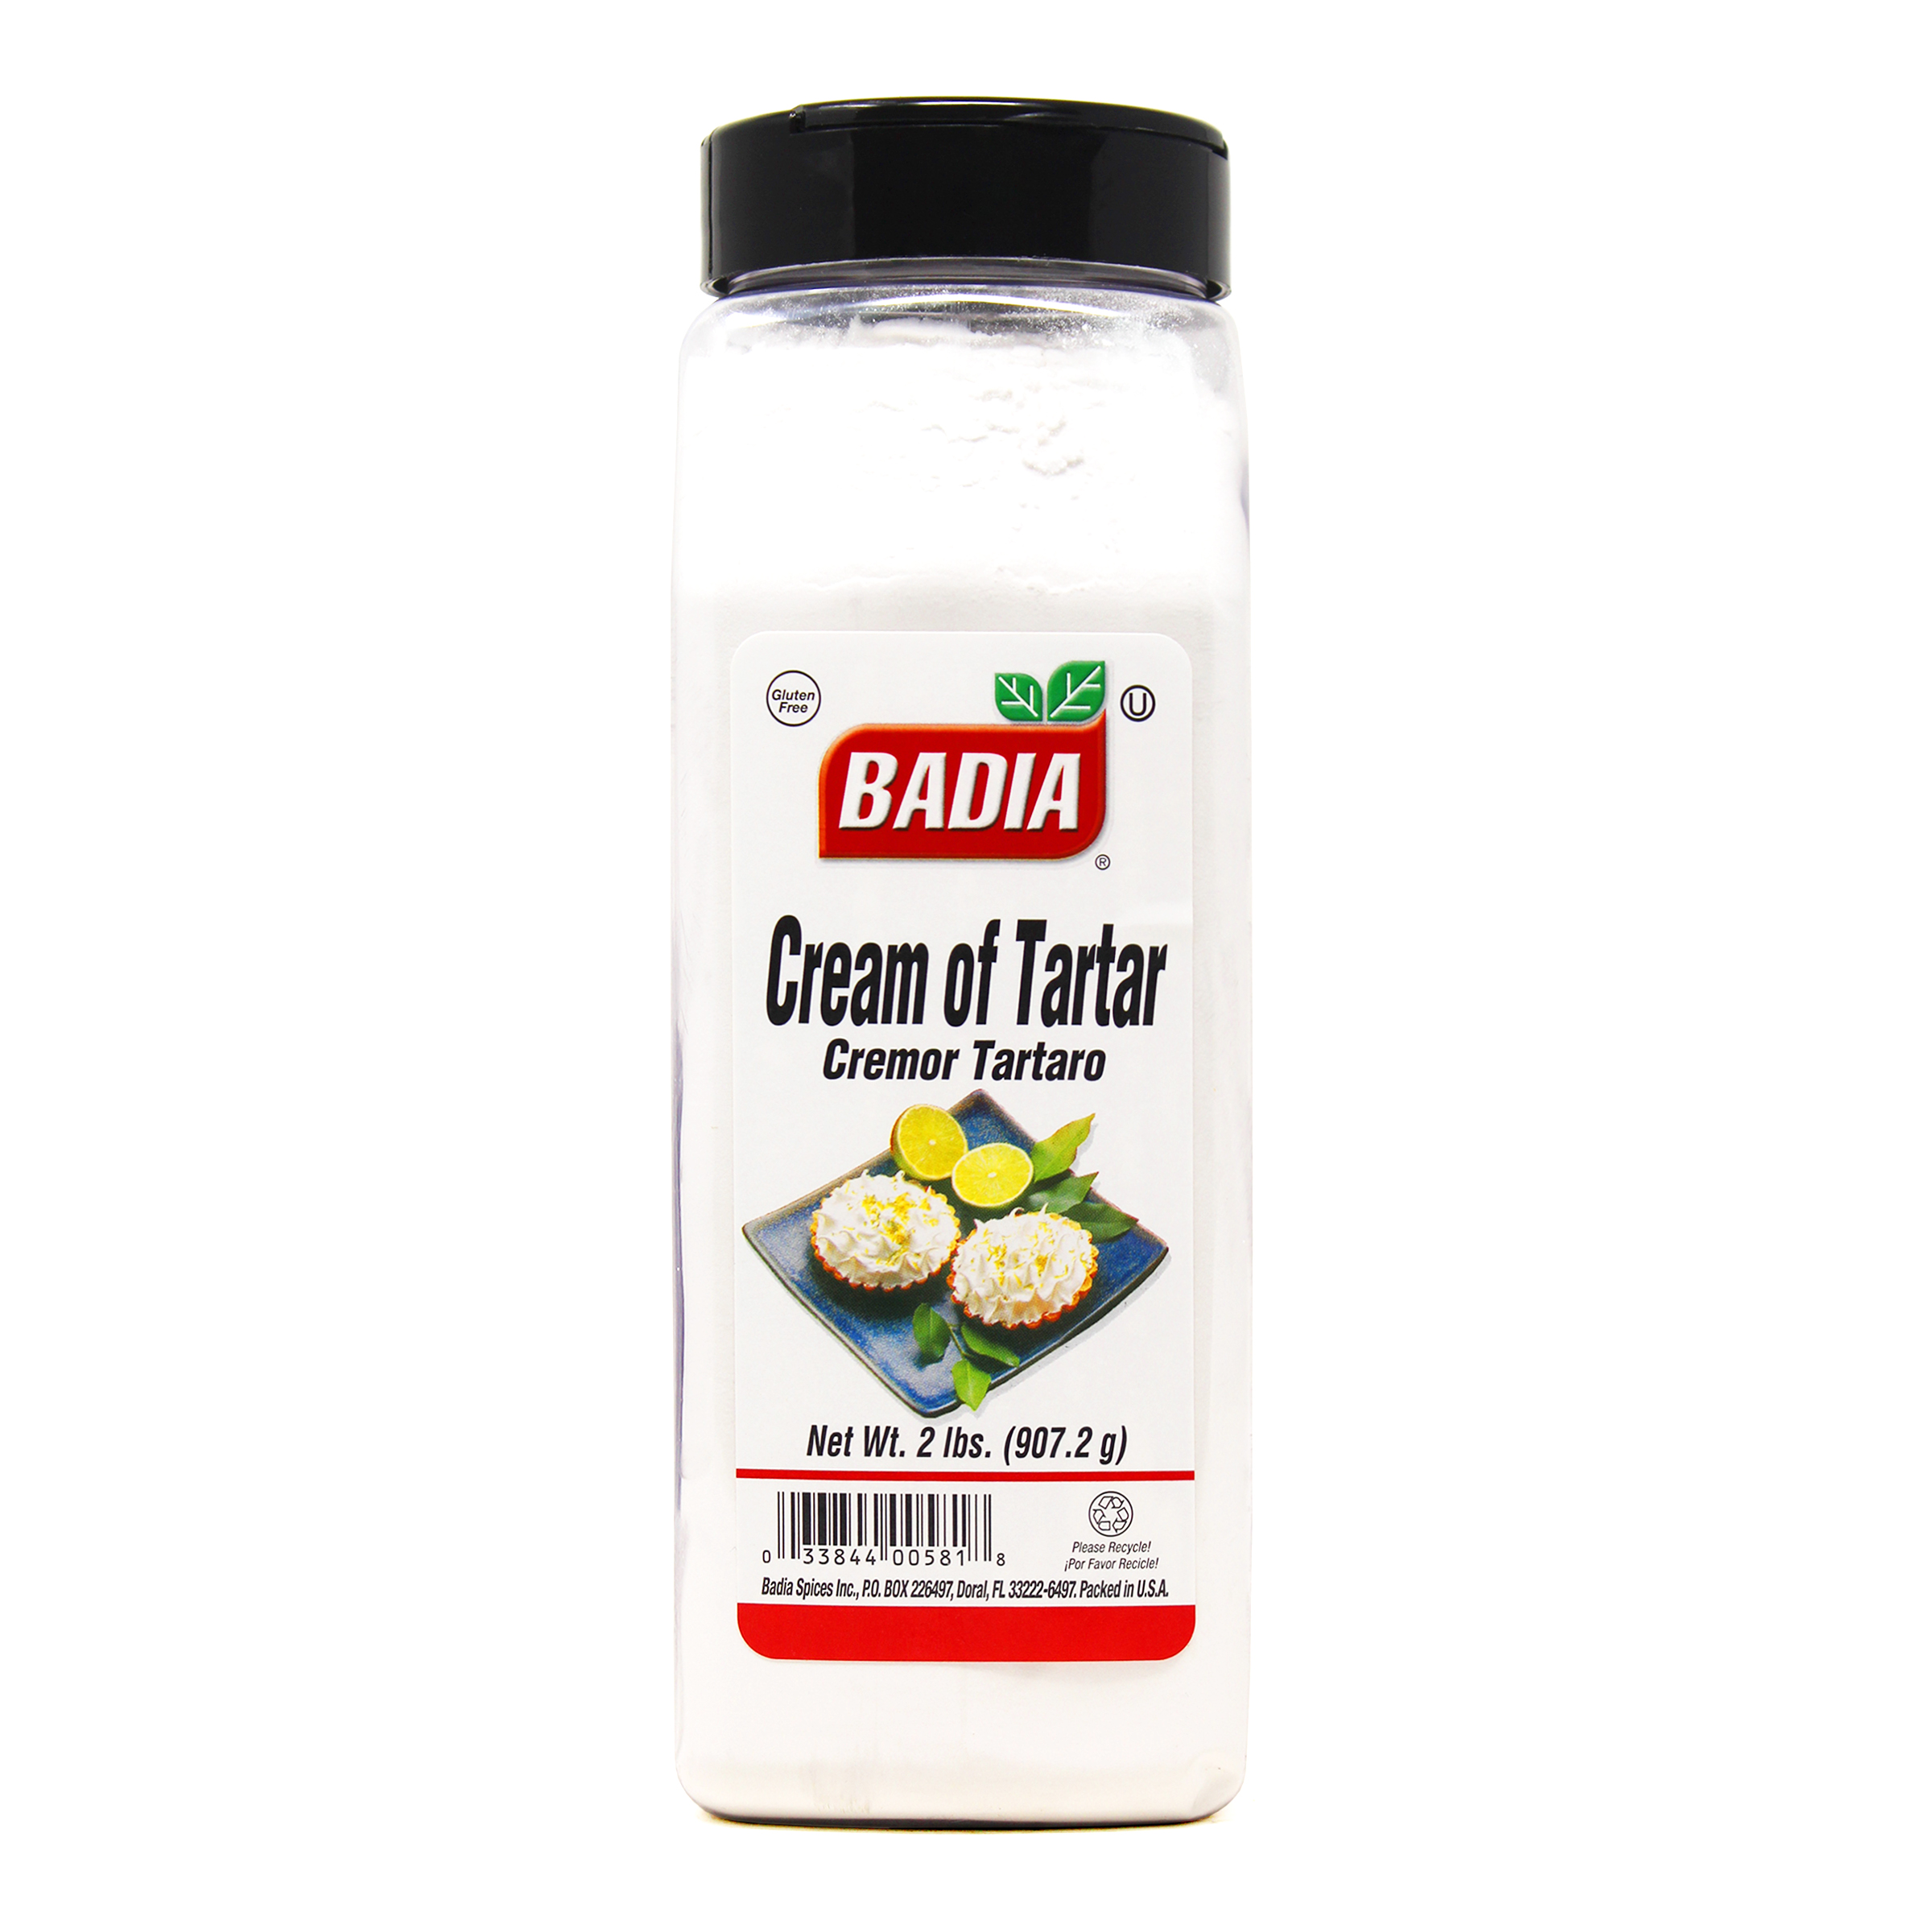 Cream of Tartar (Potassium Bitartrate)